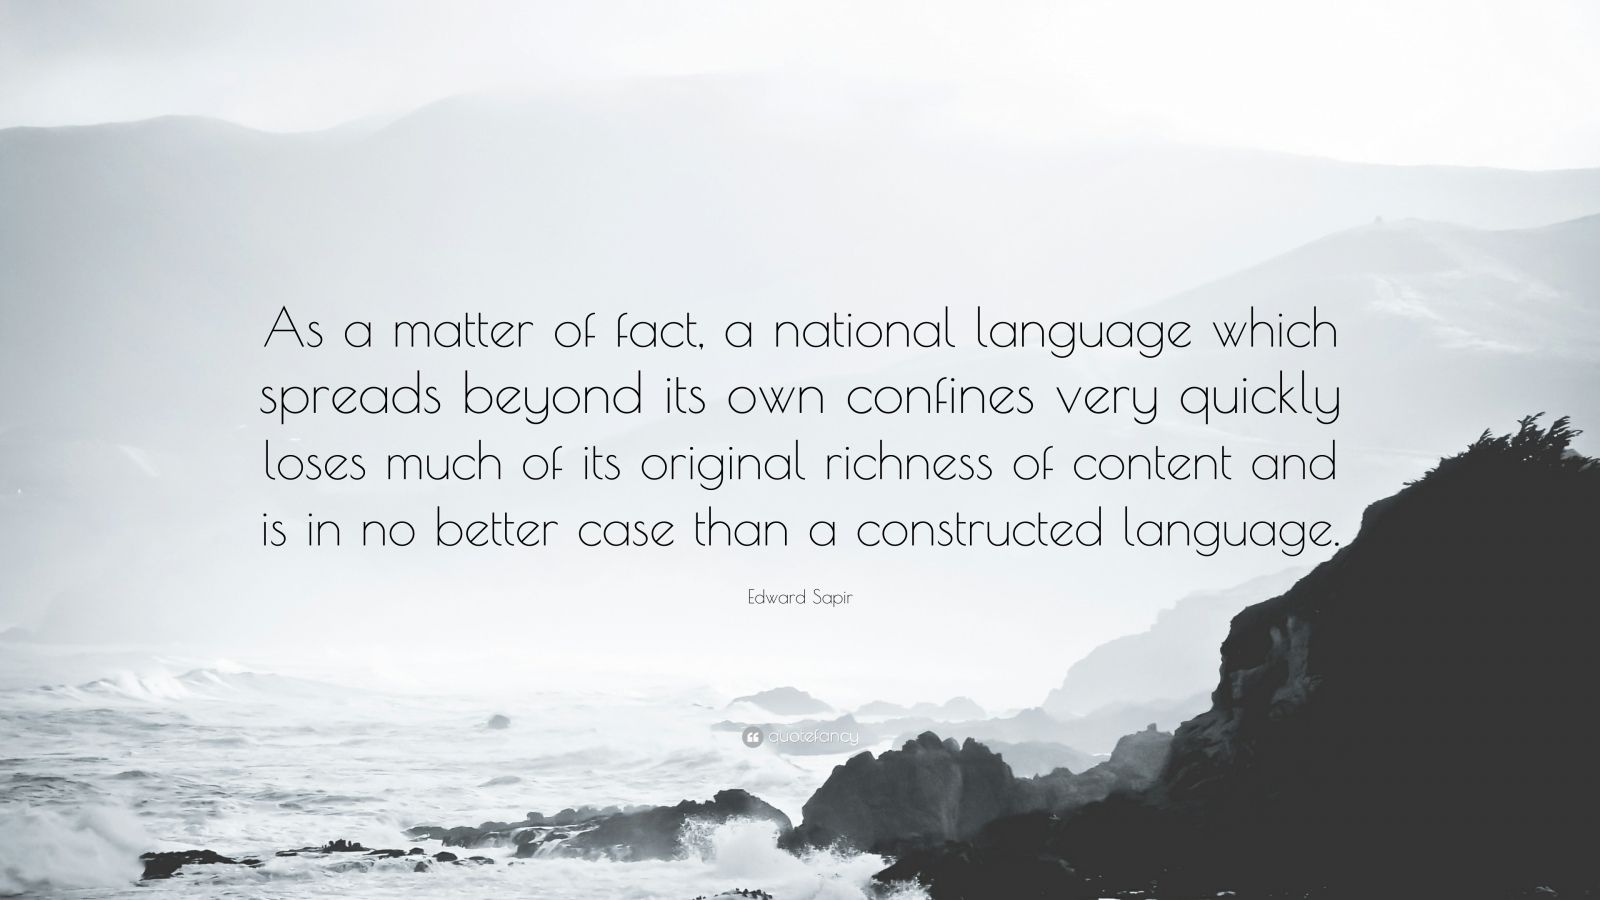 definition of language according to edward sapir